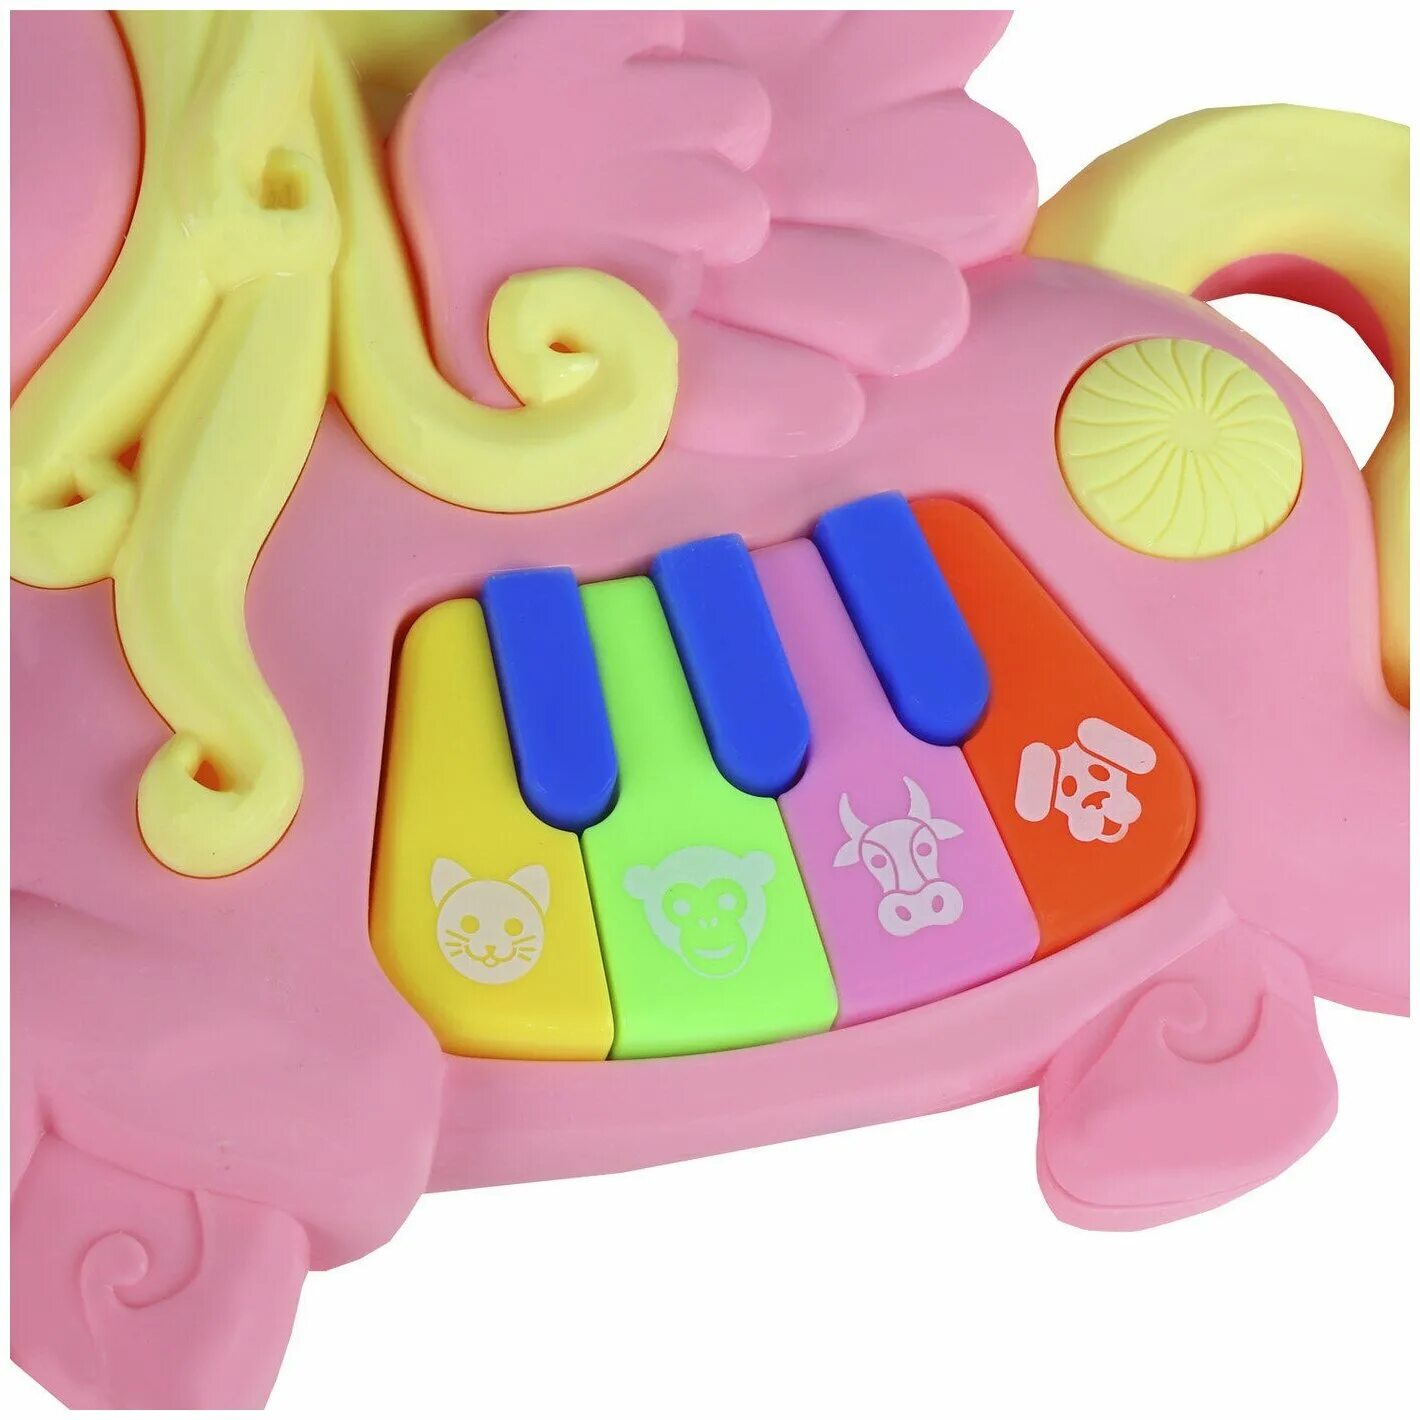 Smart Baby пианино. Детское пианино Единорог. Пианино с единорогом розовую. Игрушка детская пианино желтое с мелодиями.